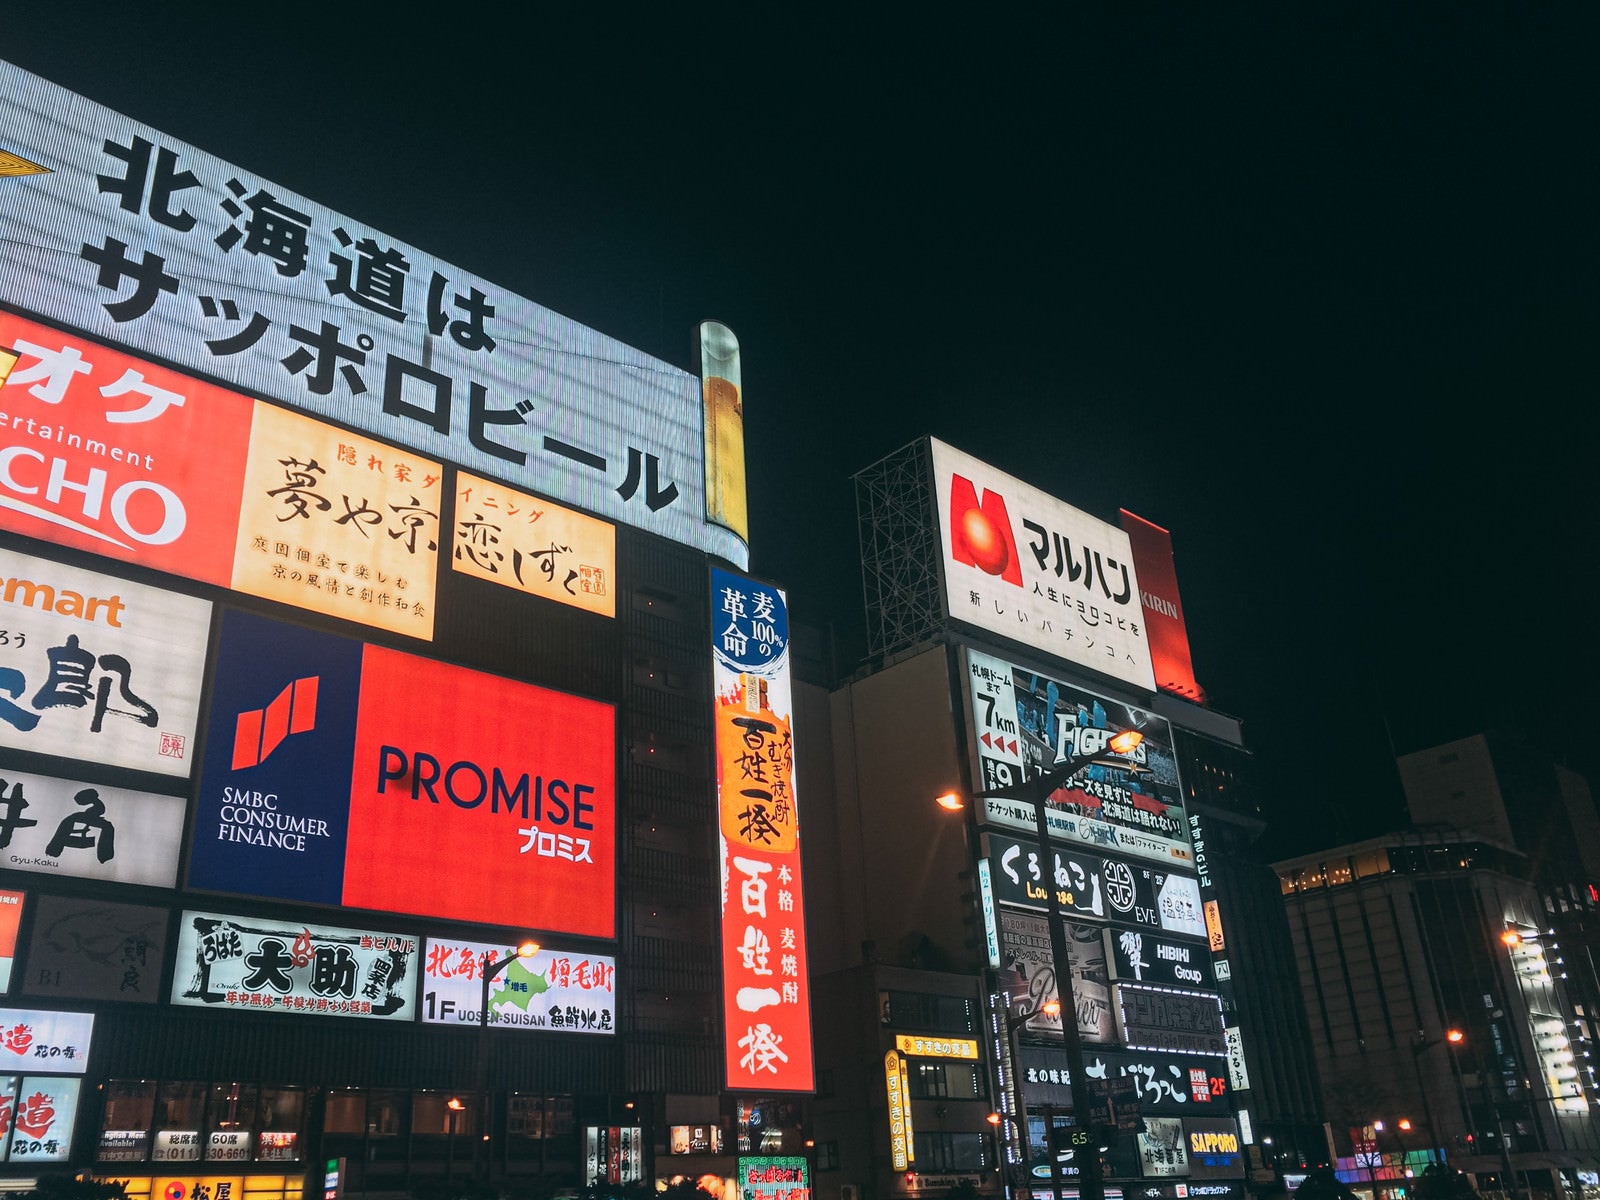 「日本三大歓楽街の一つである夜のすすきの歓楽街」の写真